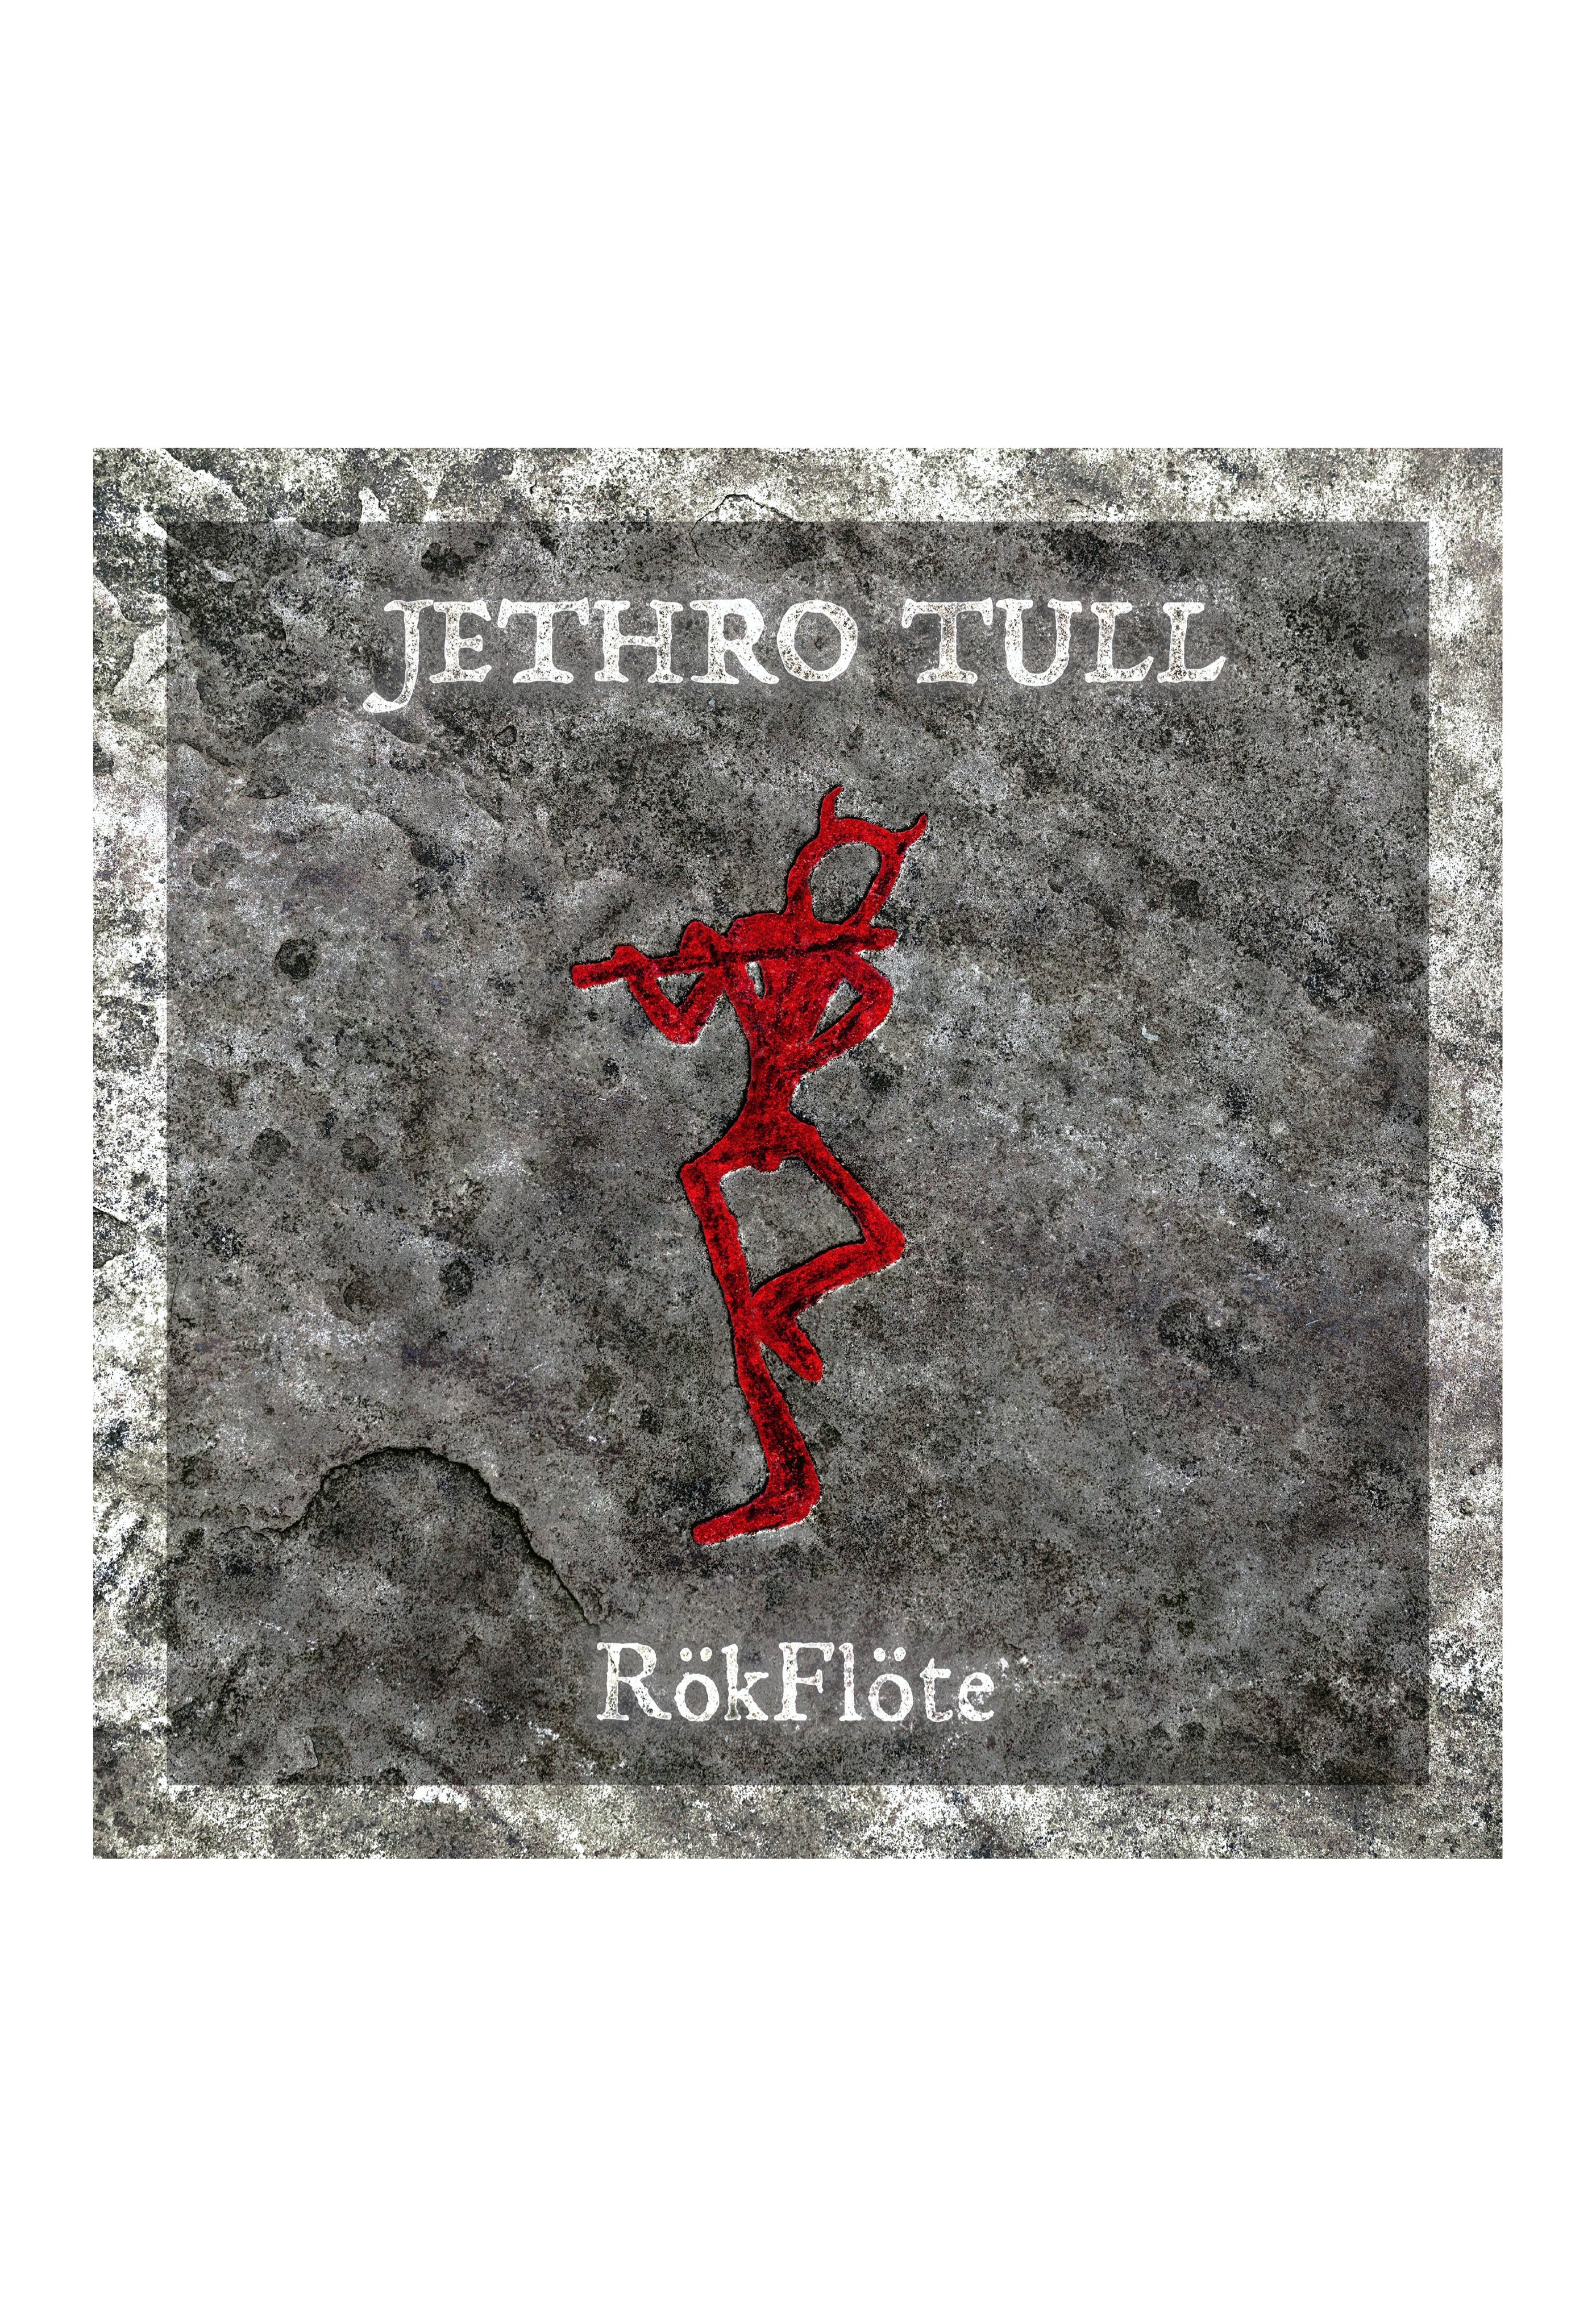 Jethro Tull - RökFlöte (Special Edition) - Digipak CD